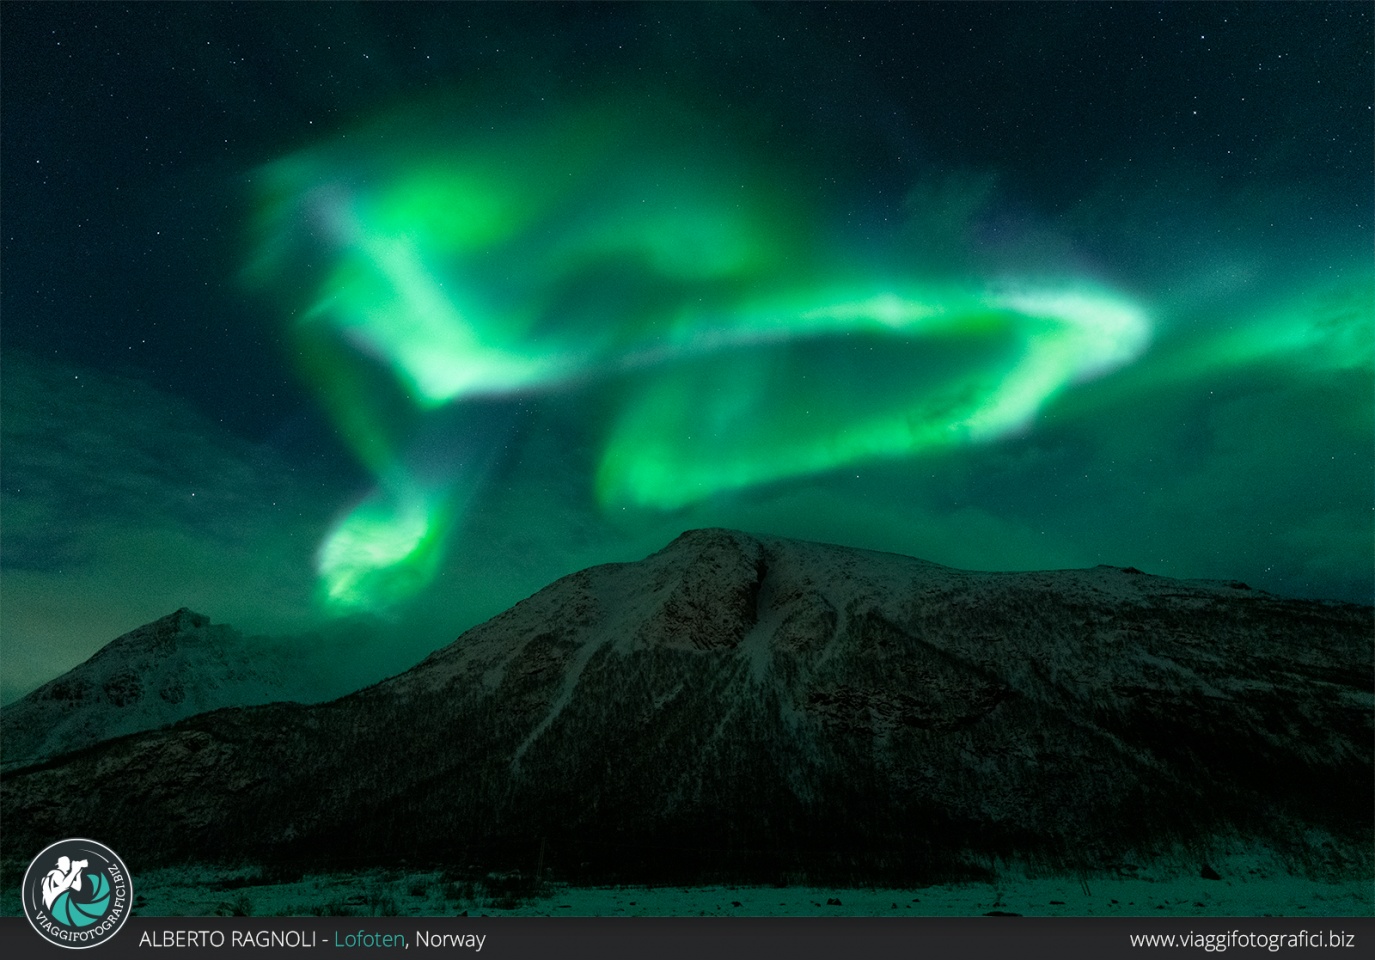 Perché questi sono gli anni migliori per vedere l'aurora boreale?